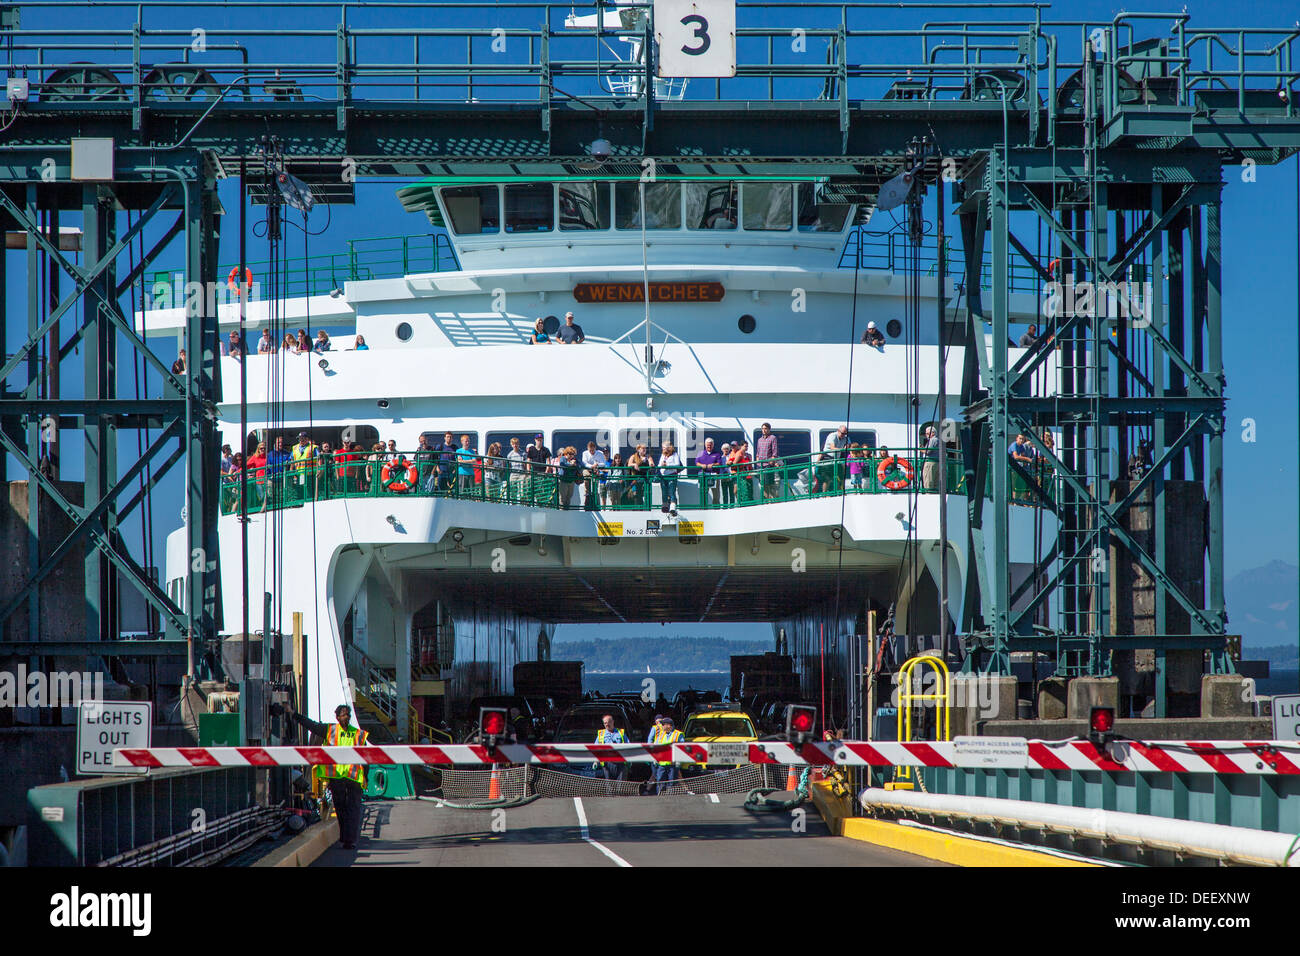 Bainbridge Island Ferry Boat llegando al muelle de Seattle, Seattle, Washington, EE.UU. Foto de stock